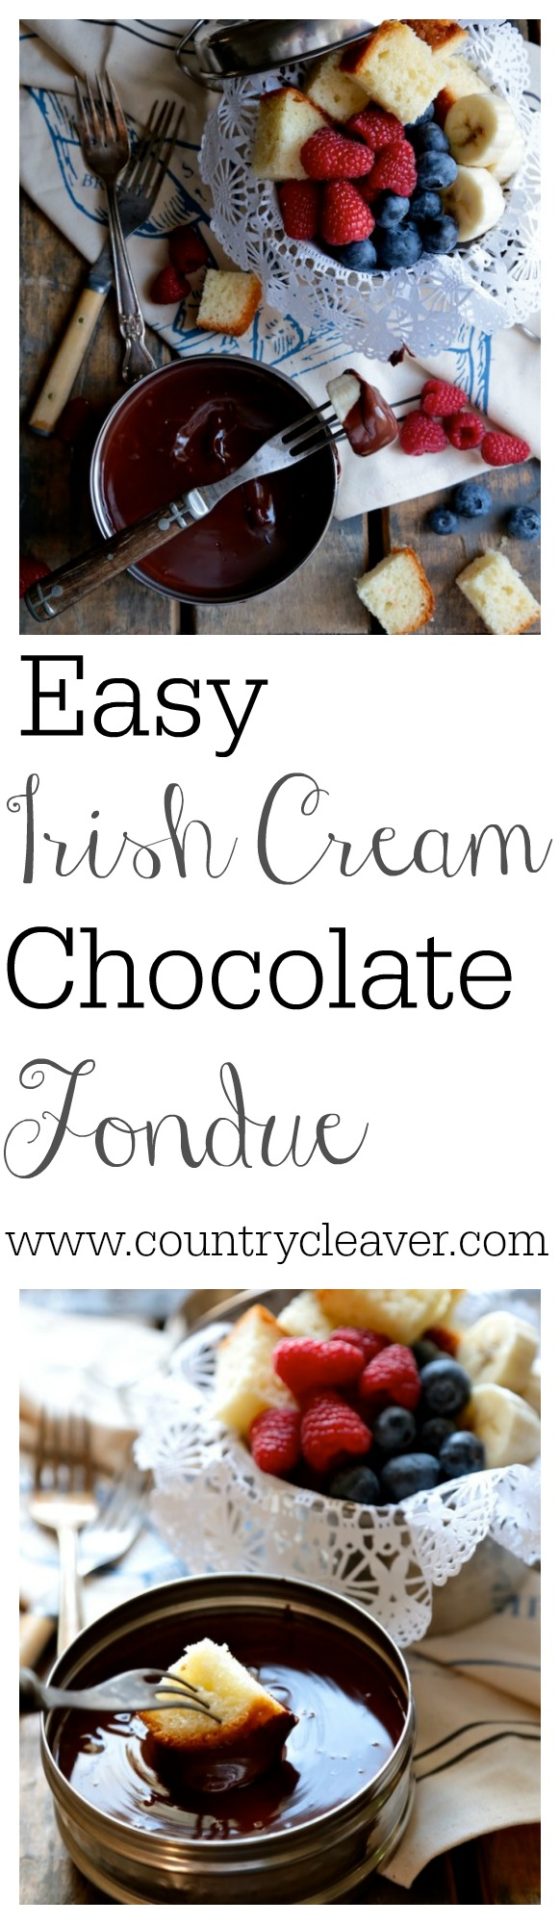 Easy Irish Cream Chocolate Fondue